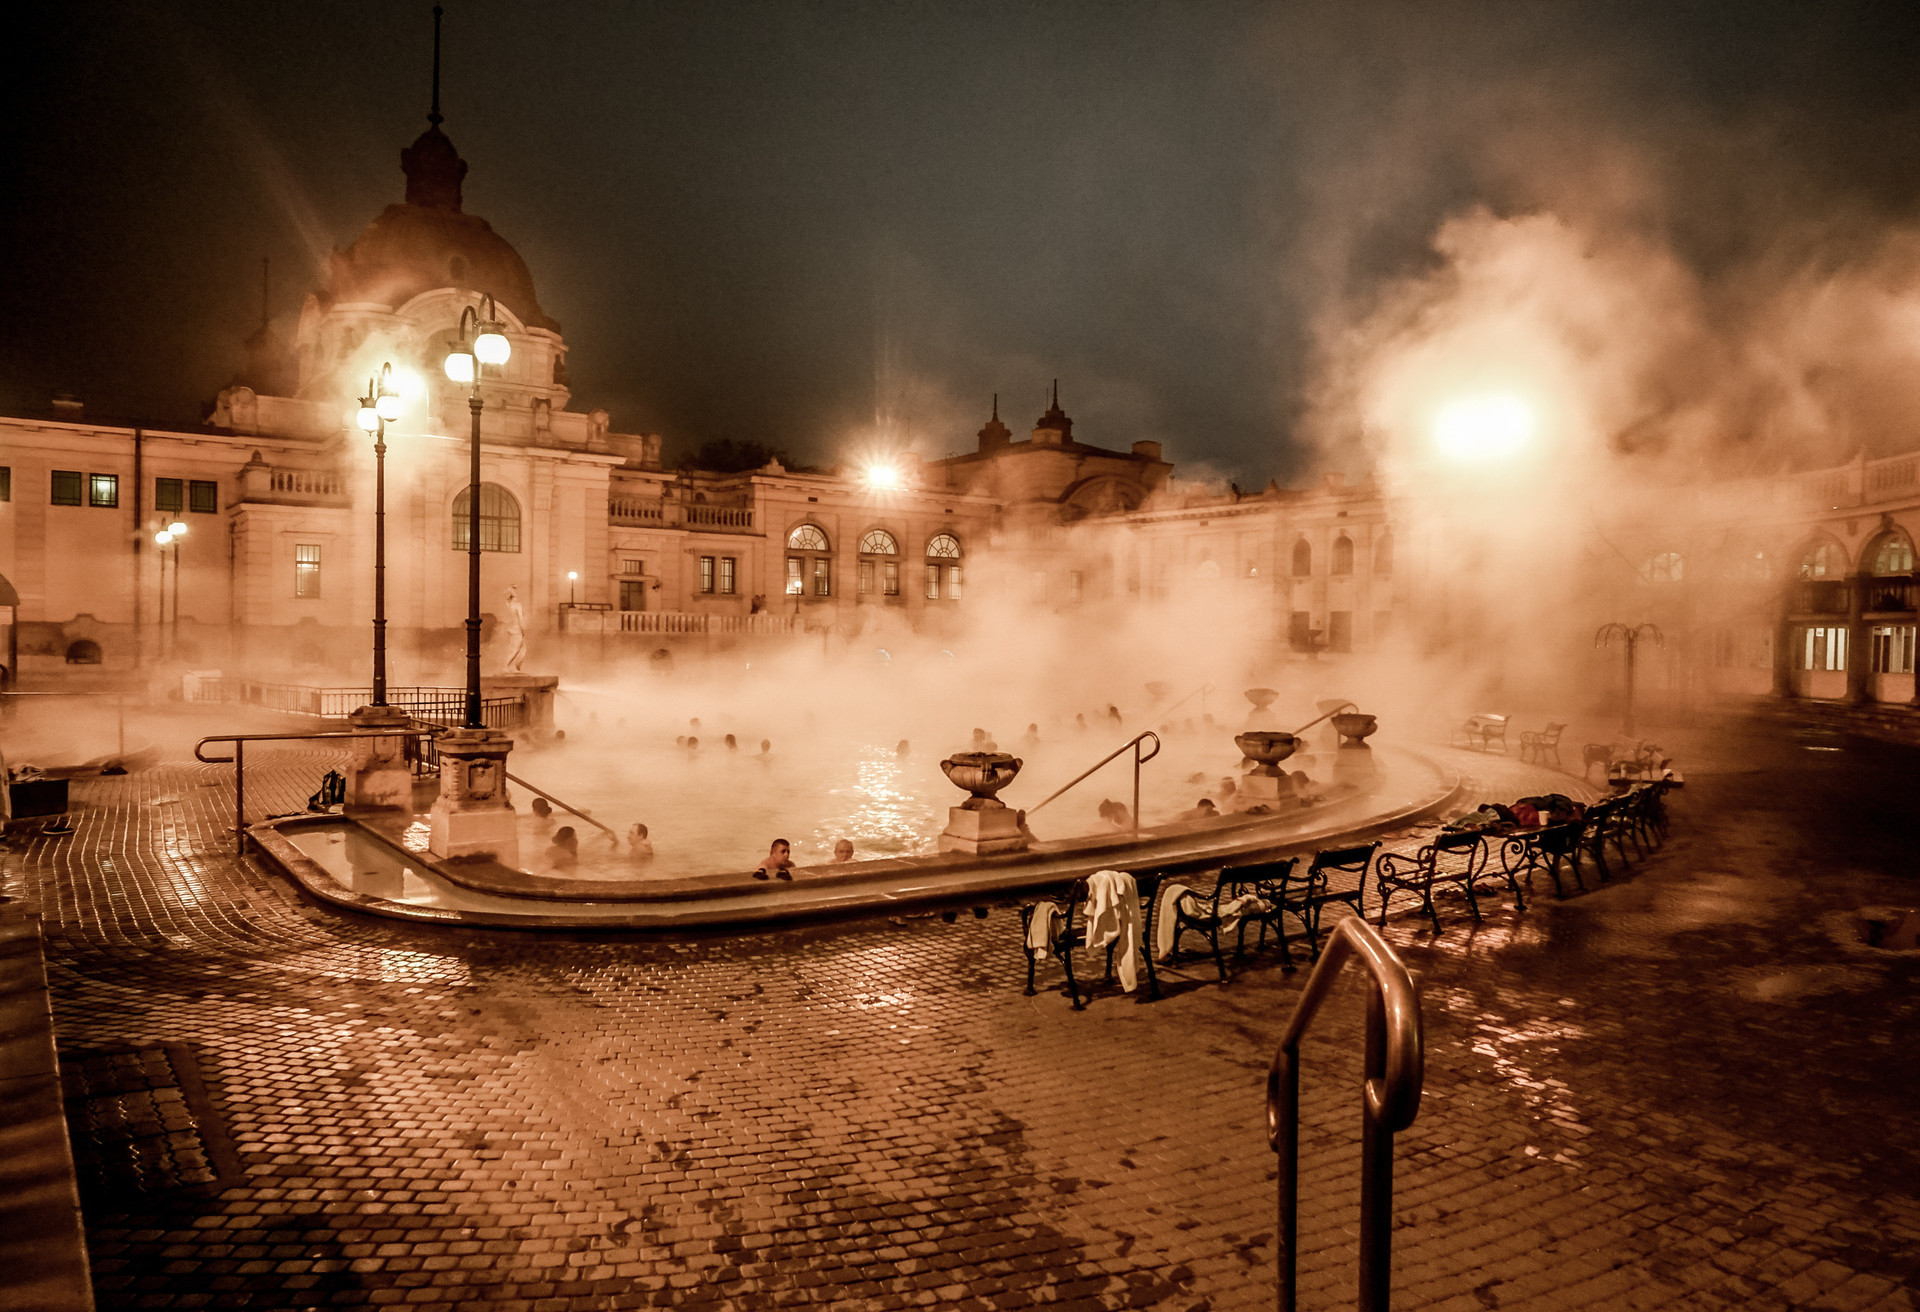 Bezoek een van de beroemde badhuizen in het prachtige Boedapest